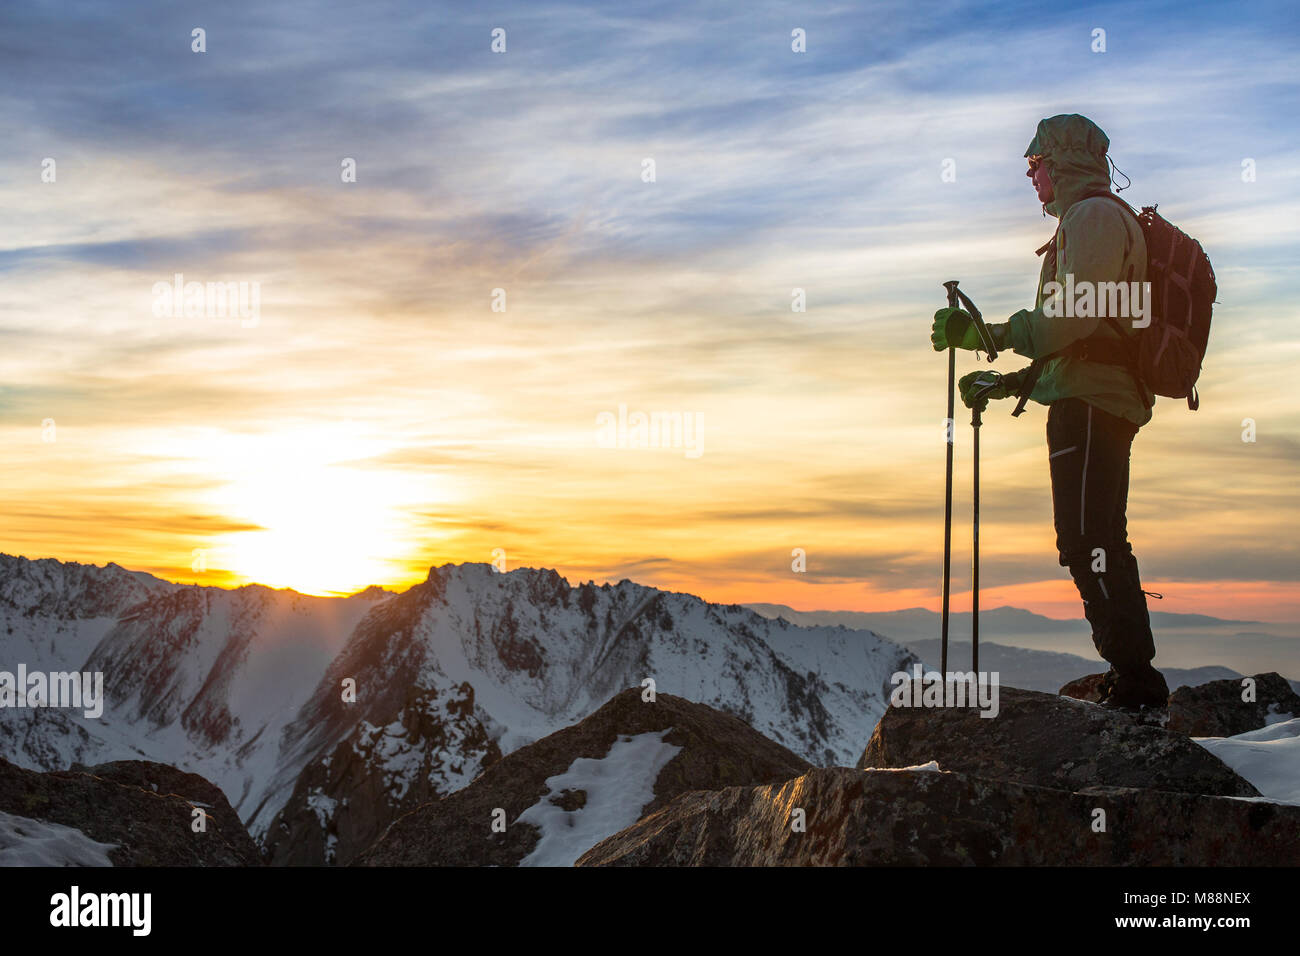 Un hombre se encuentra en la parte superior de la cumbre rocosa viendo sorprendente colorido atardecer. Trans-Ili Alatau de montañas. Región de Almaty. Kazajstán. Foto de stock